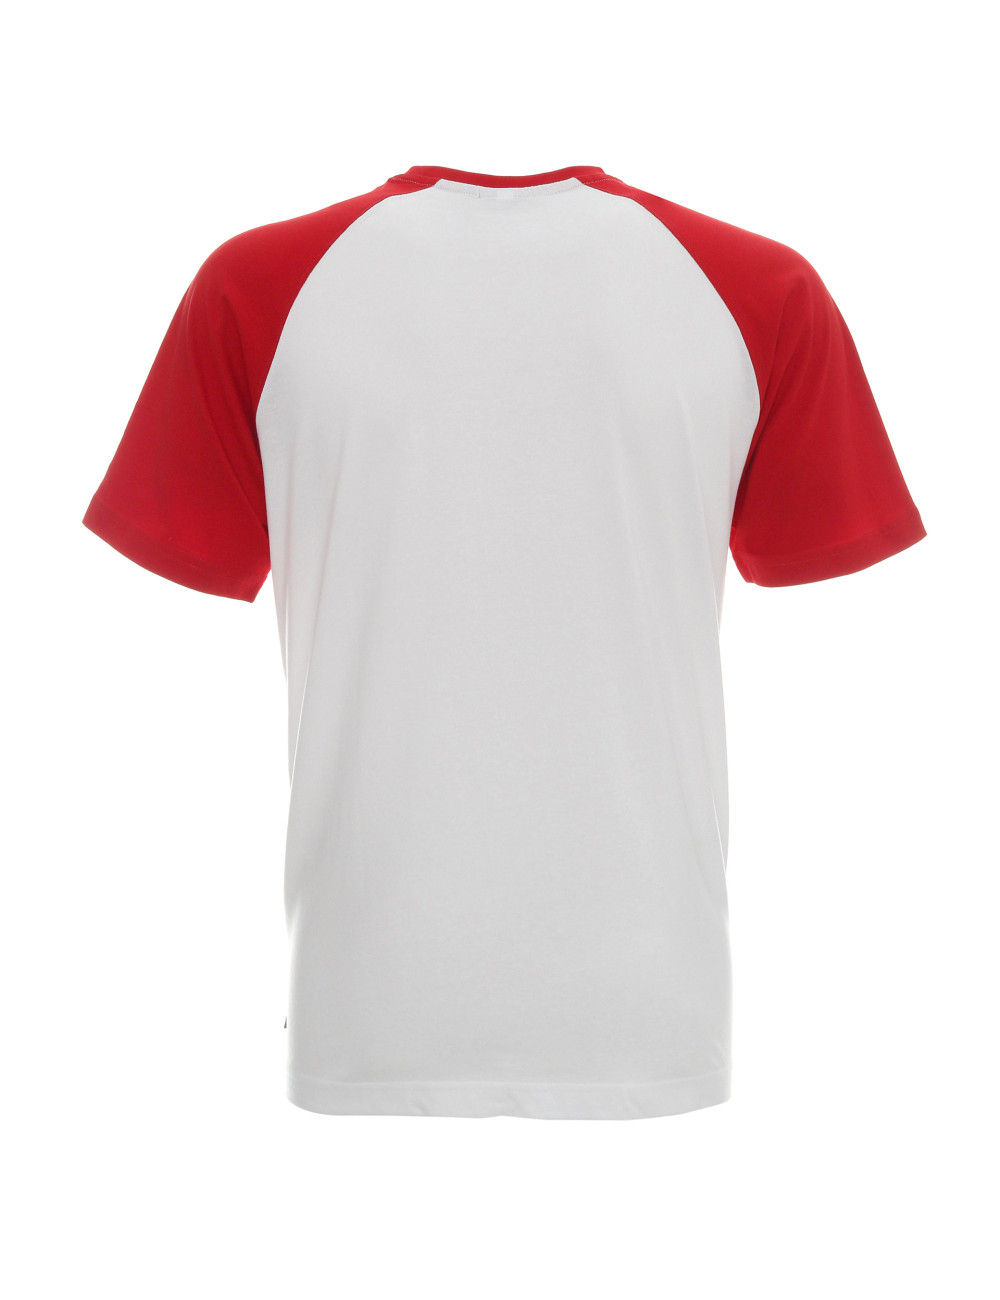 Koszulka męska cruise biały/czerwony Promostars